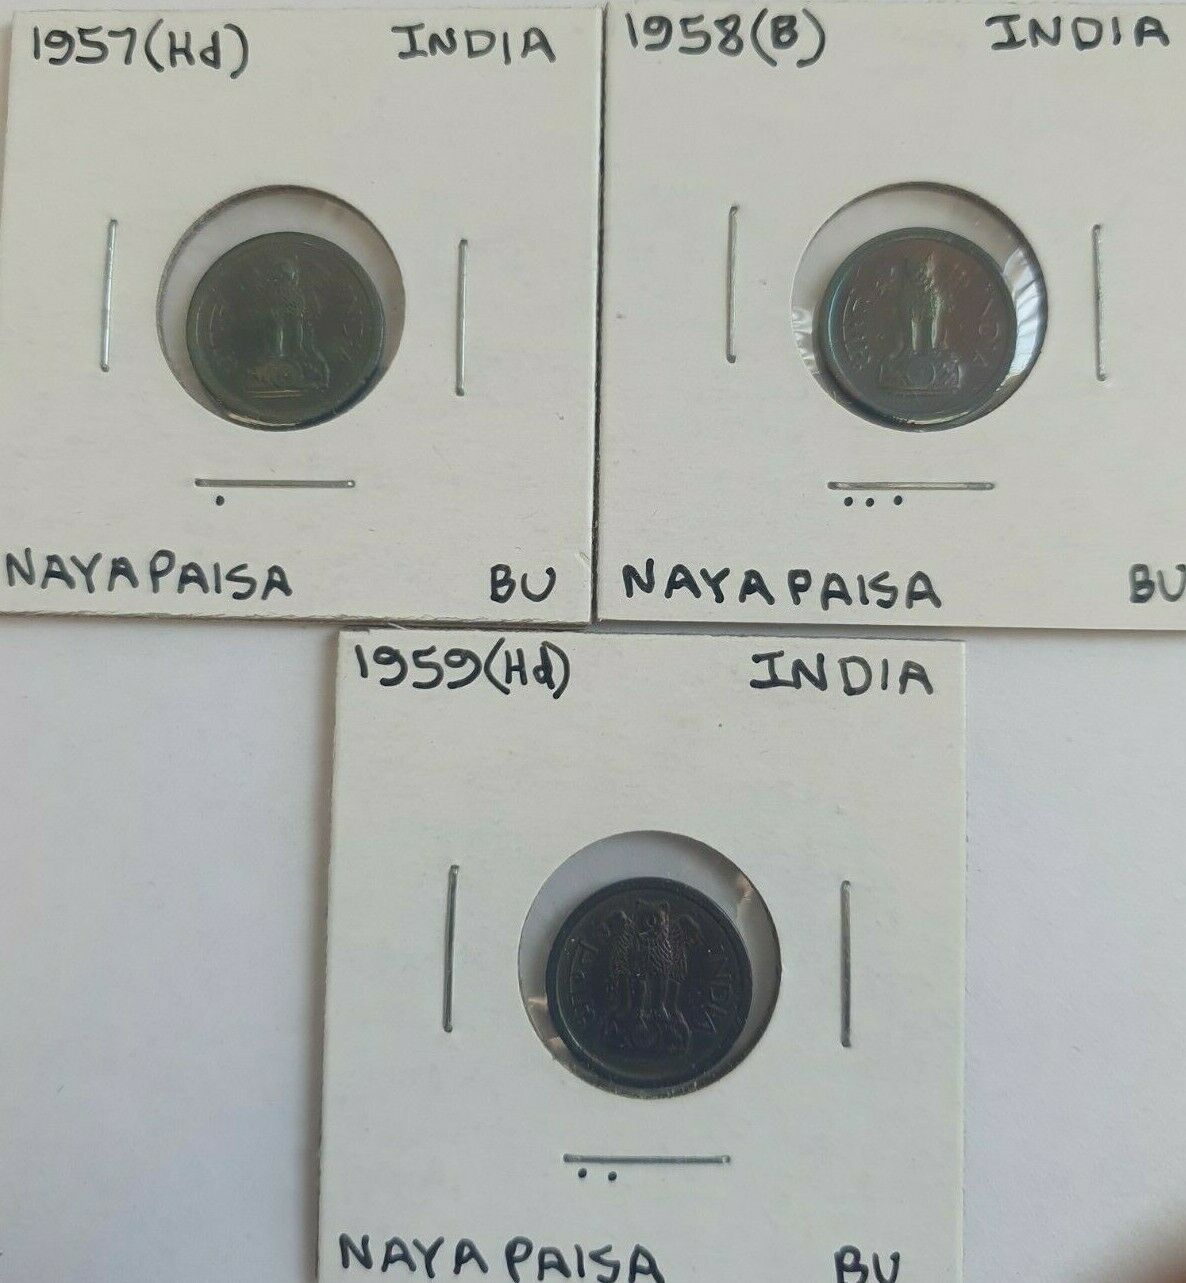 1957, 1958 & 1959 (b) (hd) India Nayapaisa Coin(s) Uncirculated